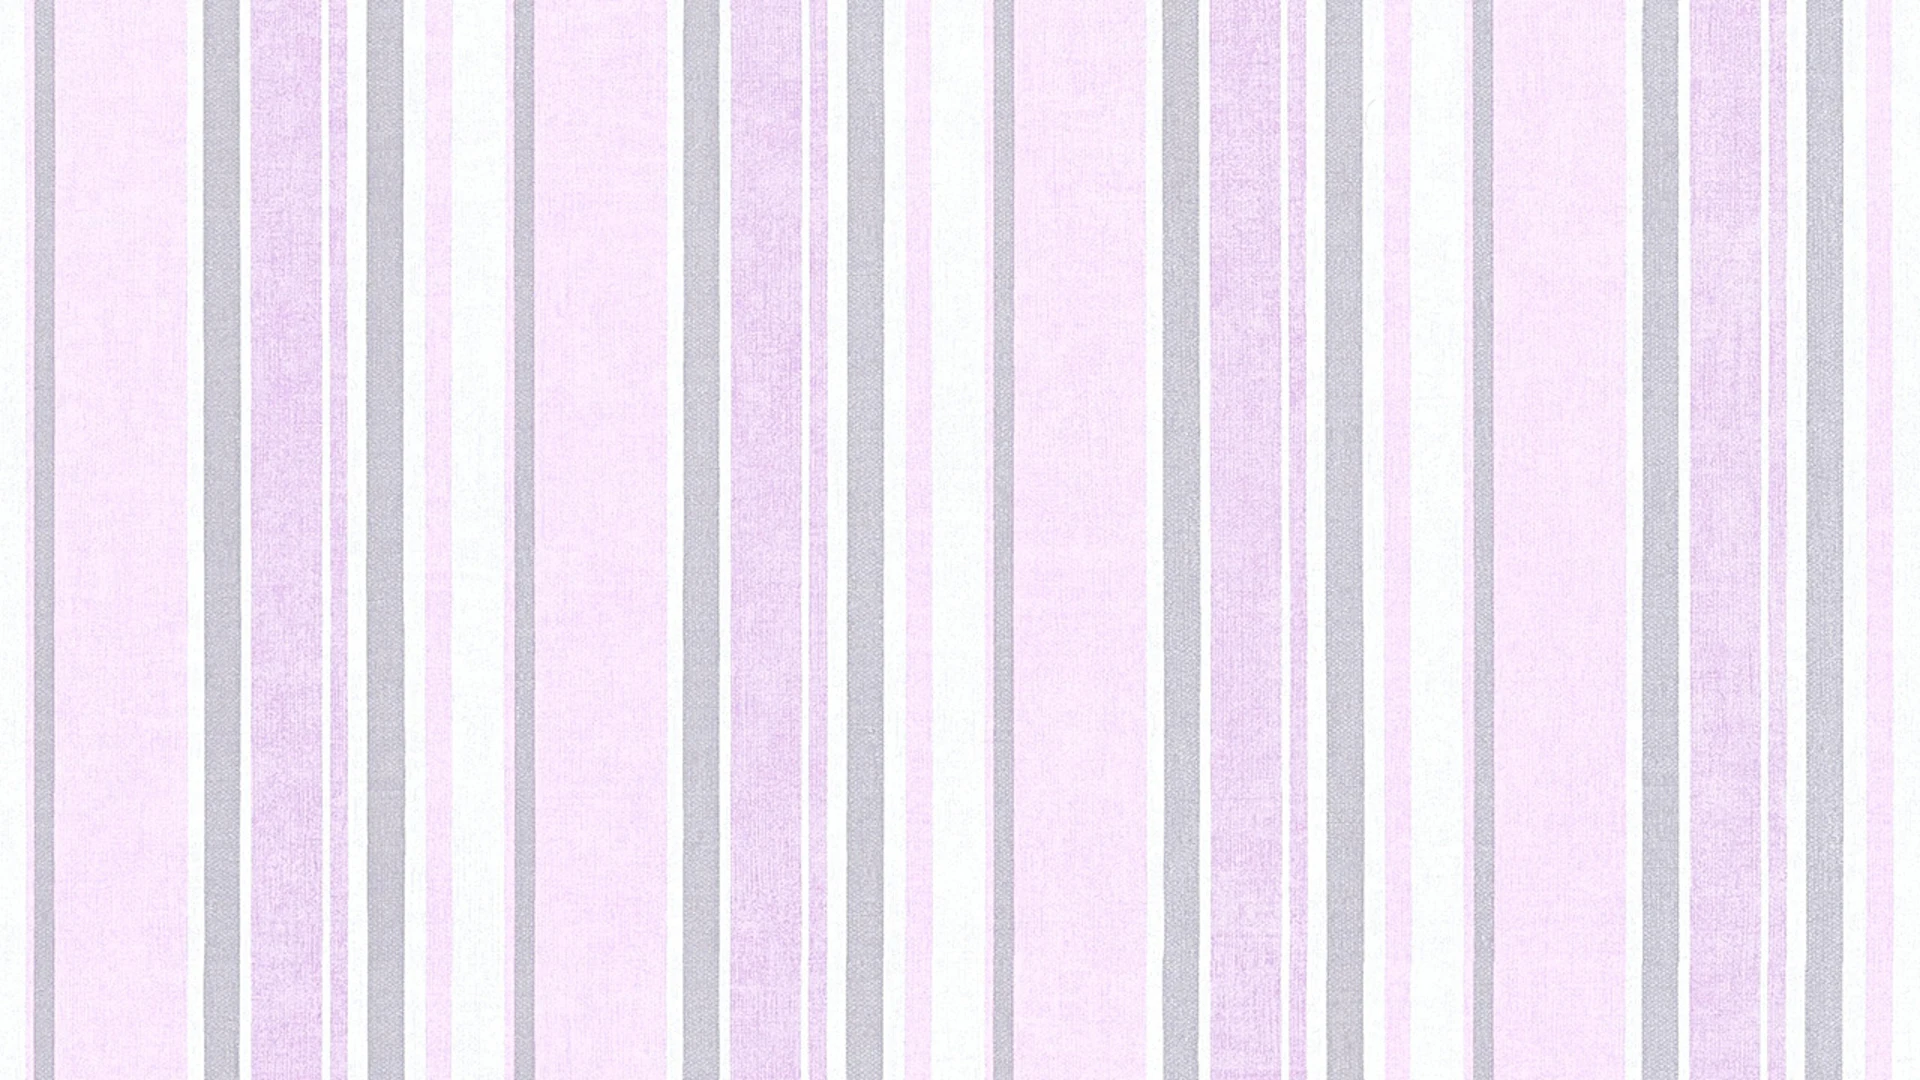 Non-woven wallpaper Little Stars A.S. Création children's wallpaper metallic pink white 494